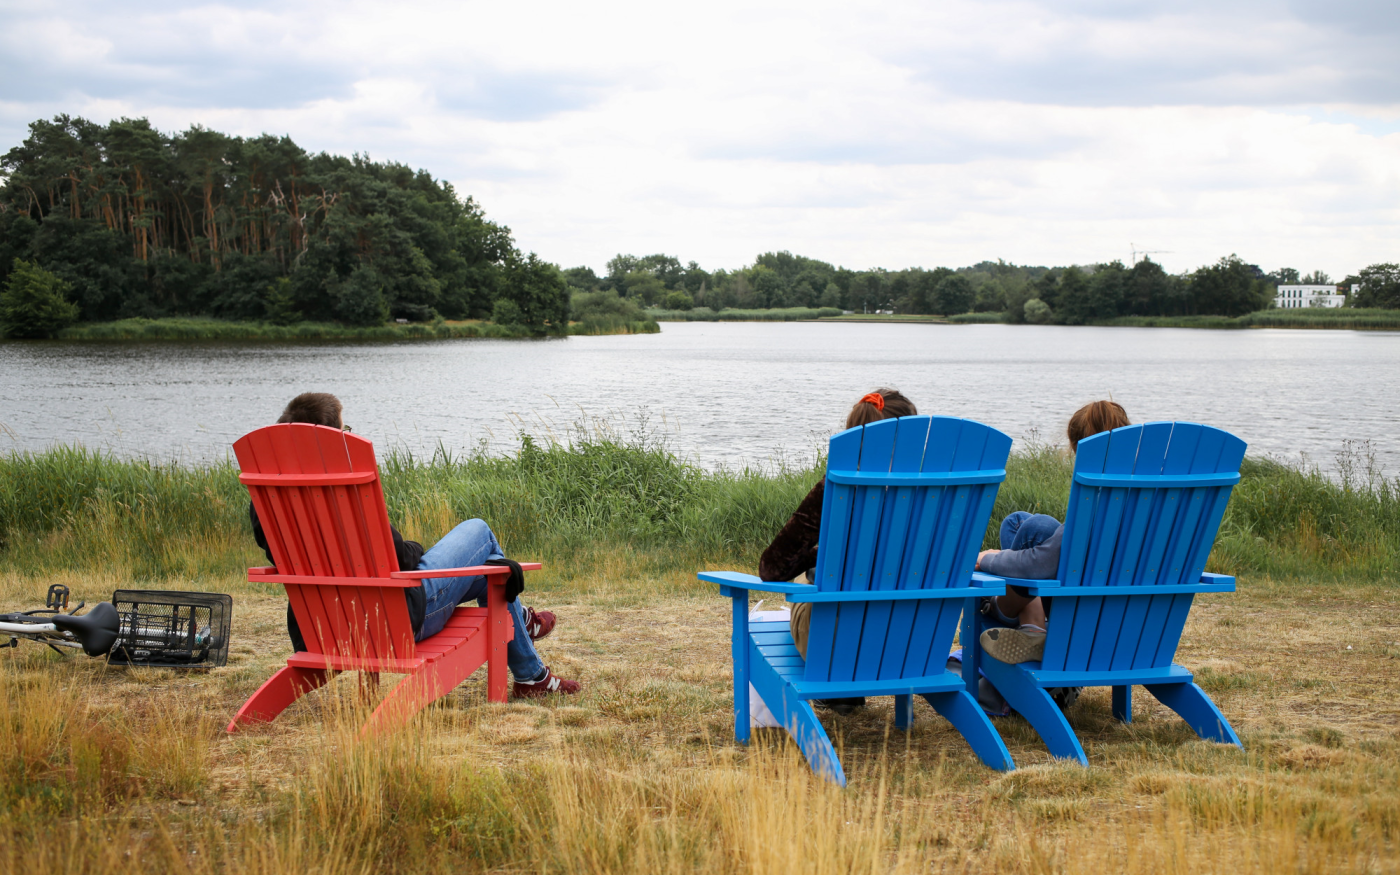 Randalierer zerstören zwei weitere Stühle - Das ist das Aus für Gifhorns neue Relax-Sessel am Schlosssee